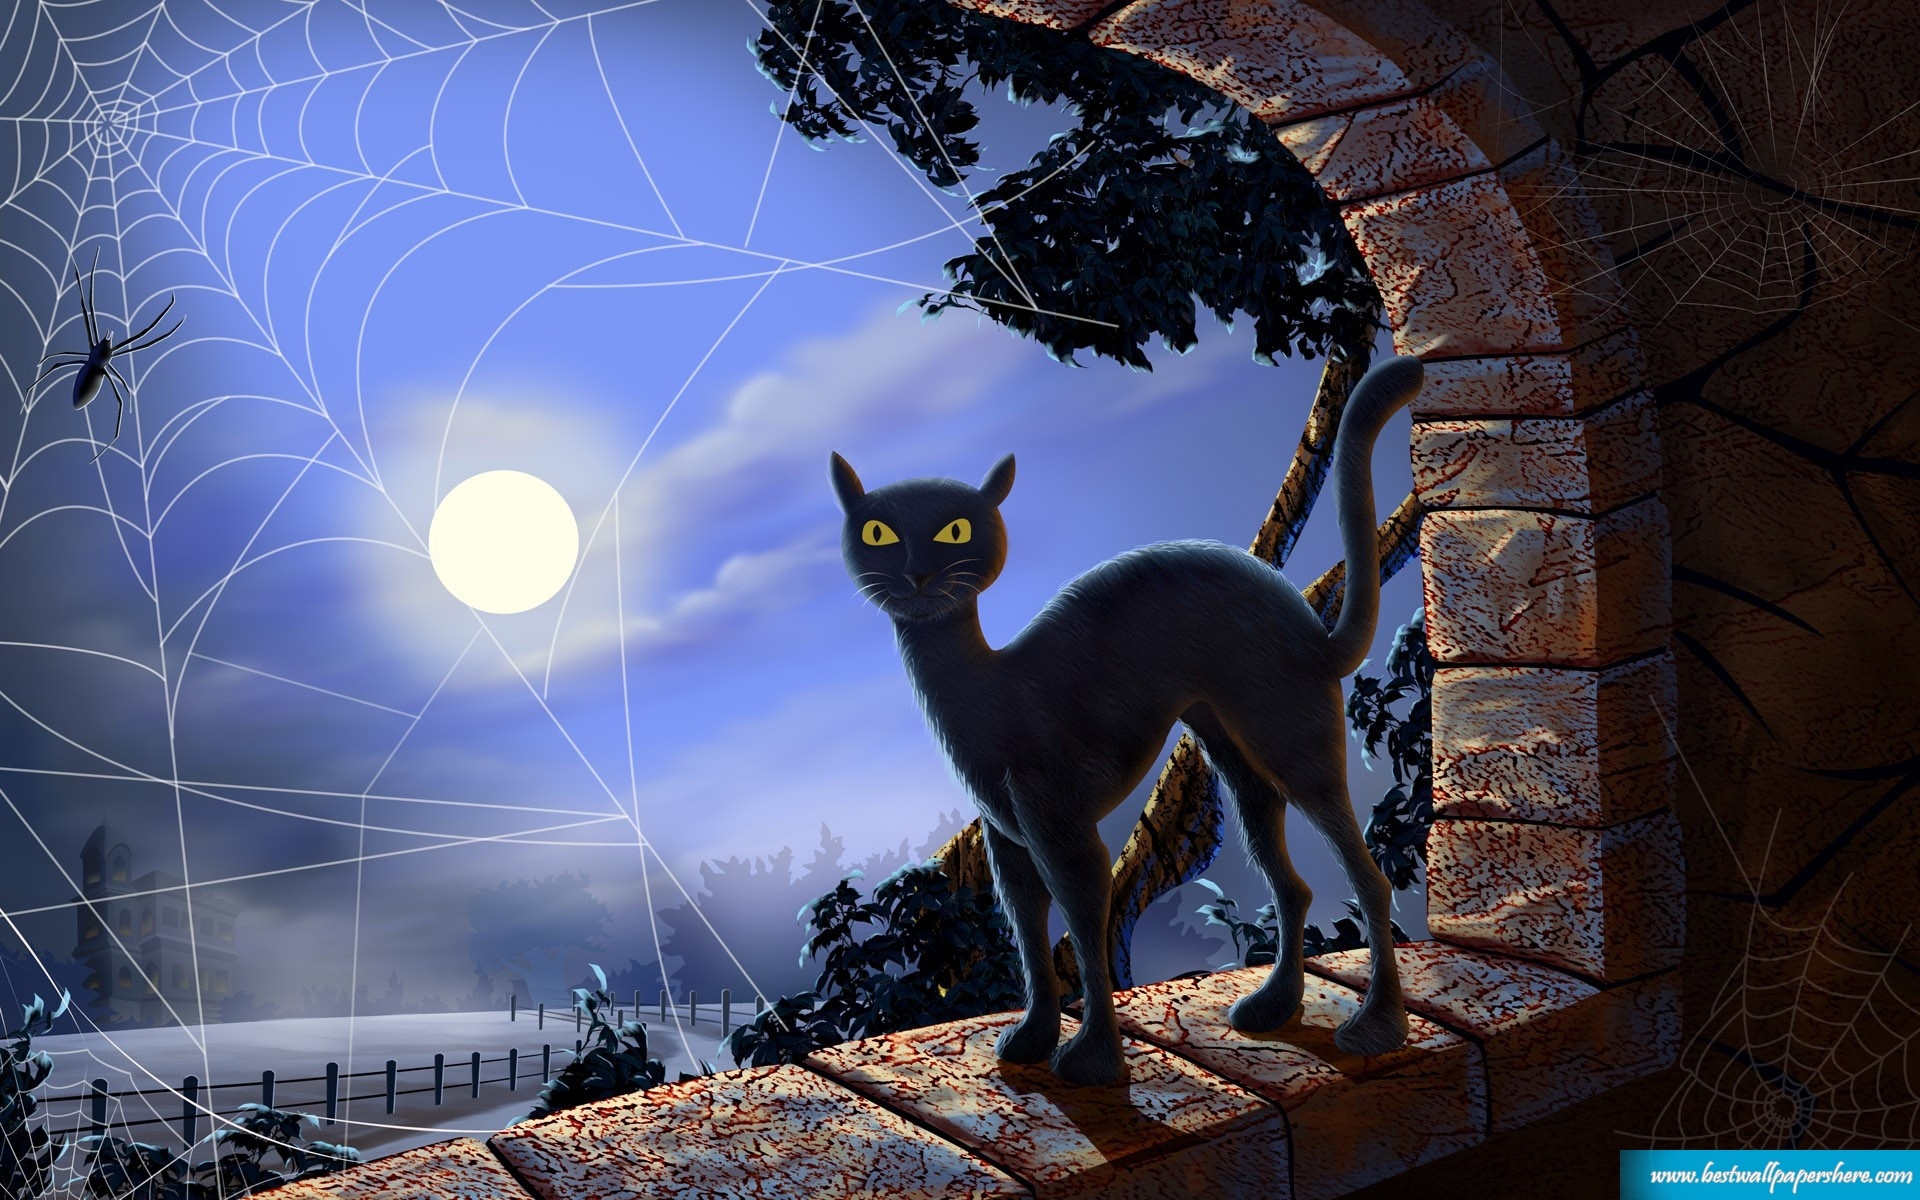 Halloween Cat Wallpaper